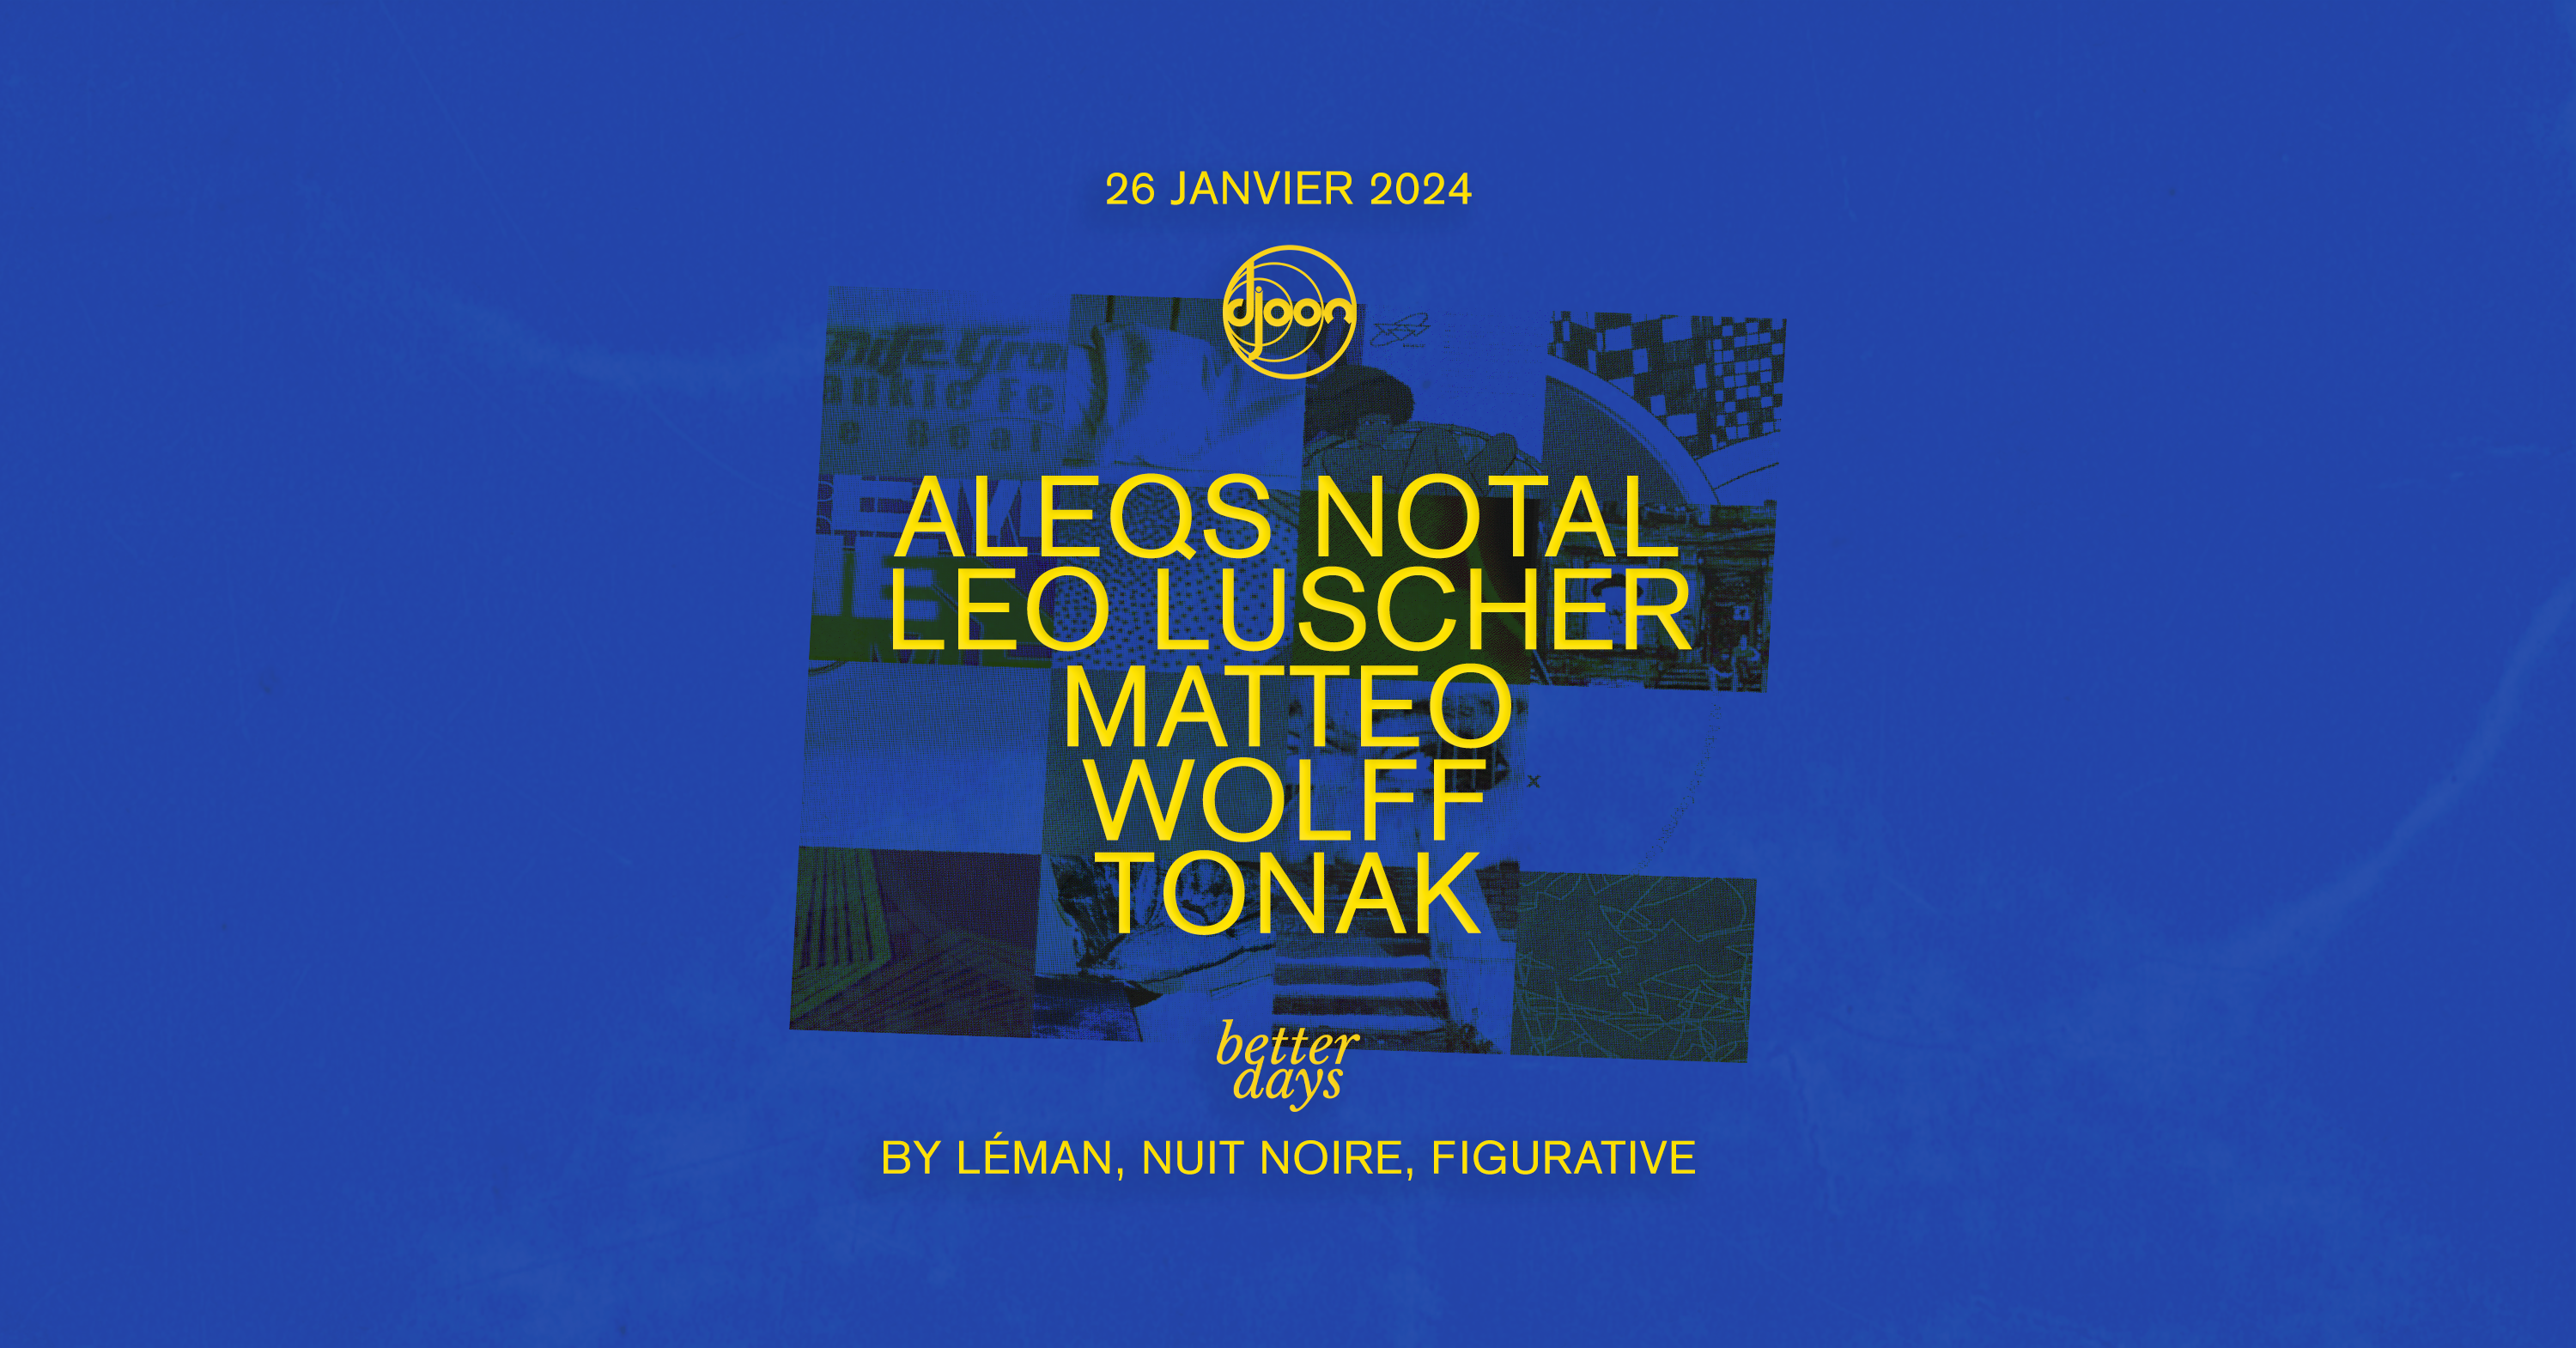 Better Days invite Aleqs Notals - Página trasera